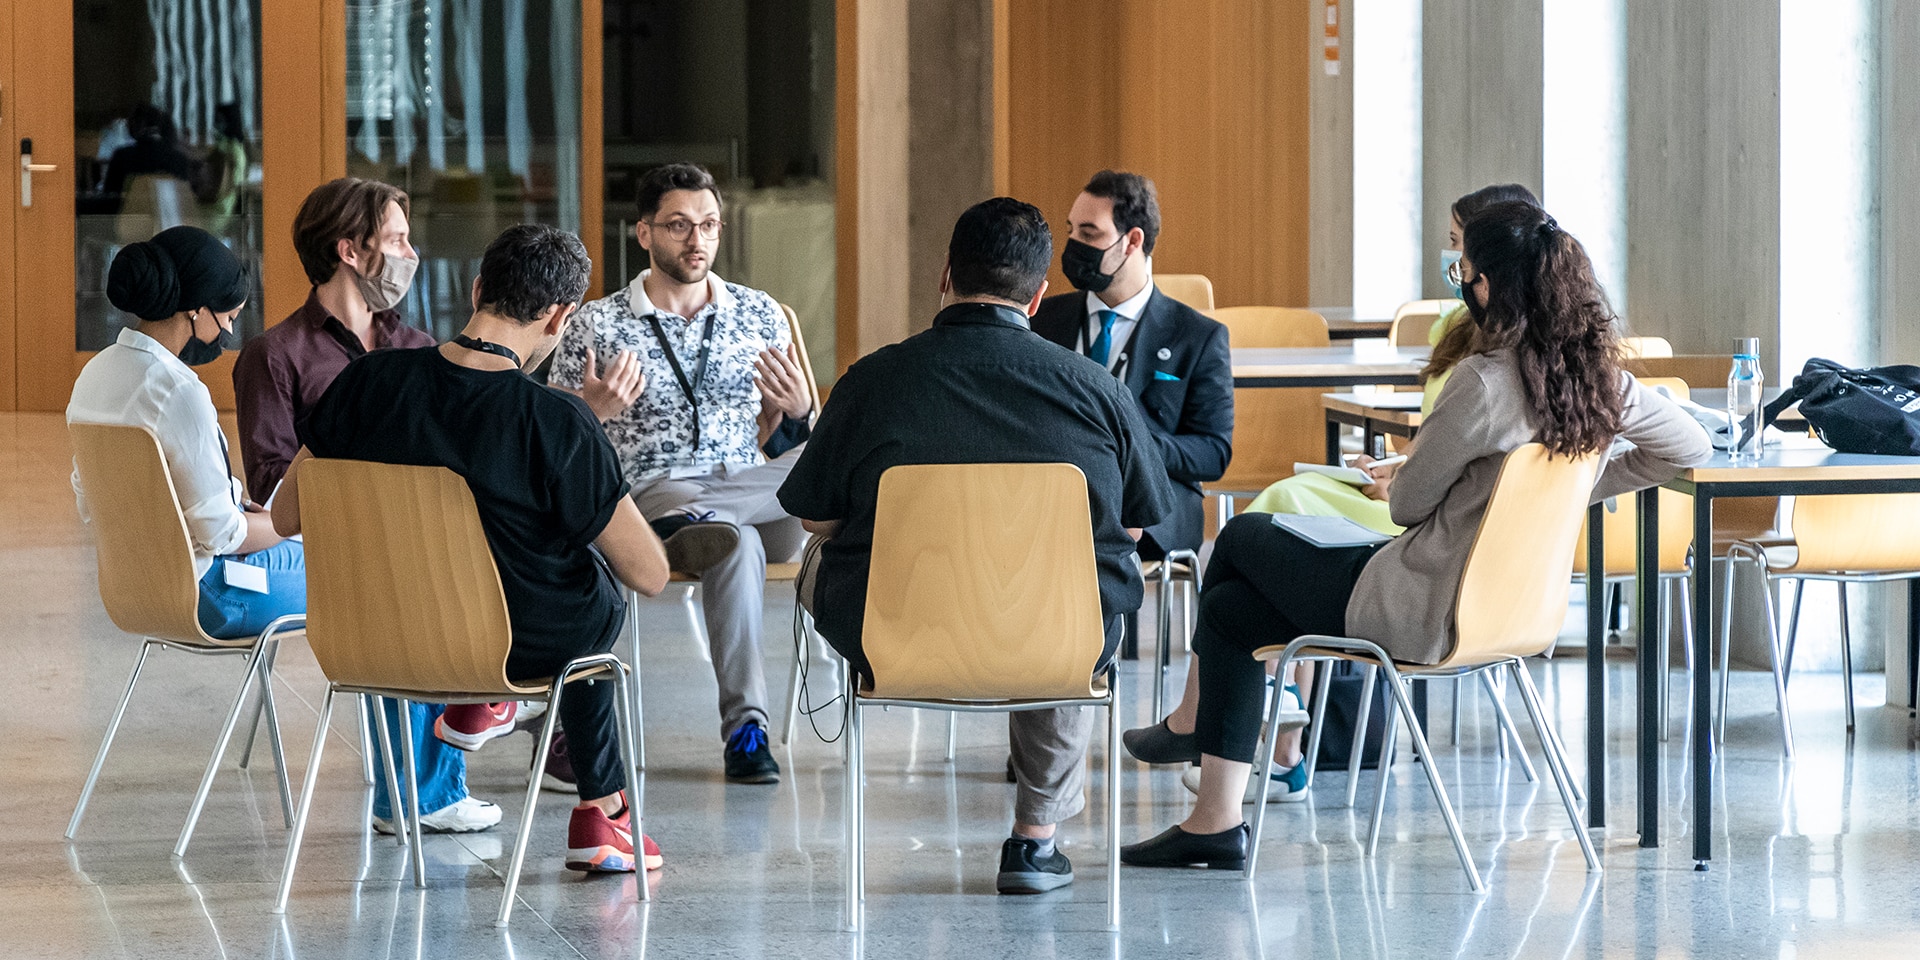 Einige Teilnehmer des MEM Summer Summit diskutieren, während sie auf Stühlen im Kreis sitzen.